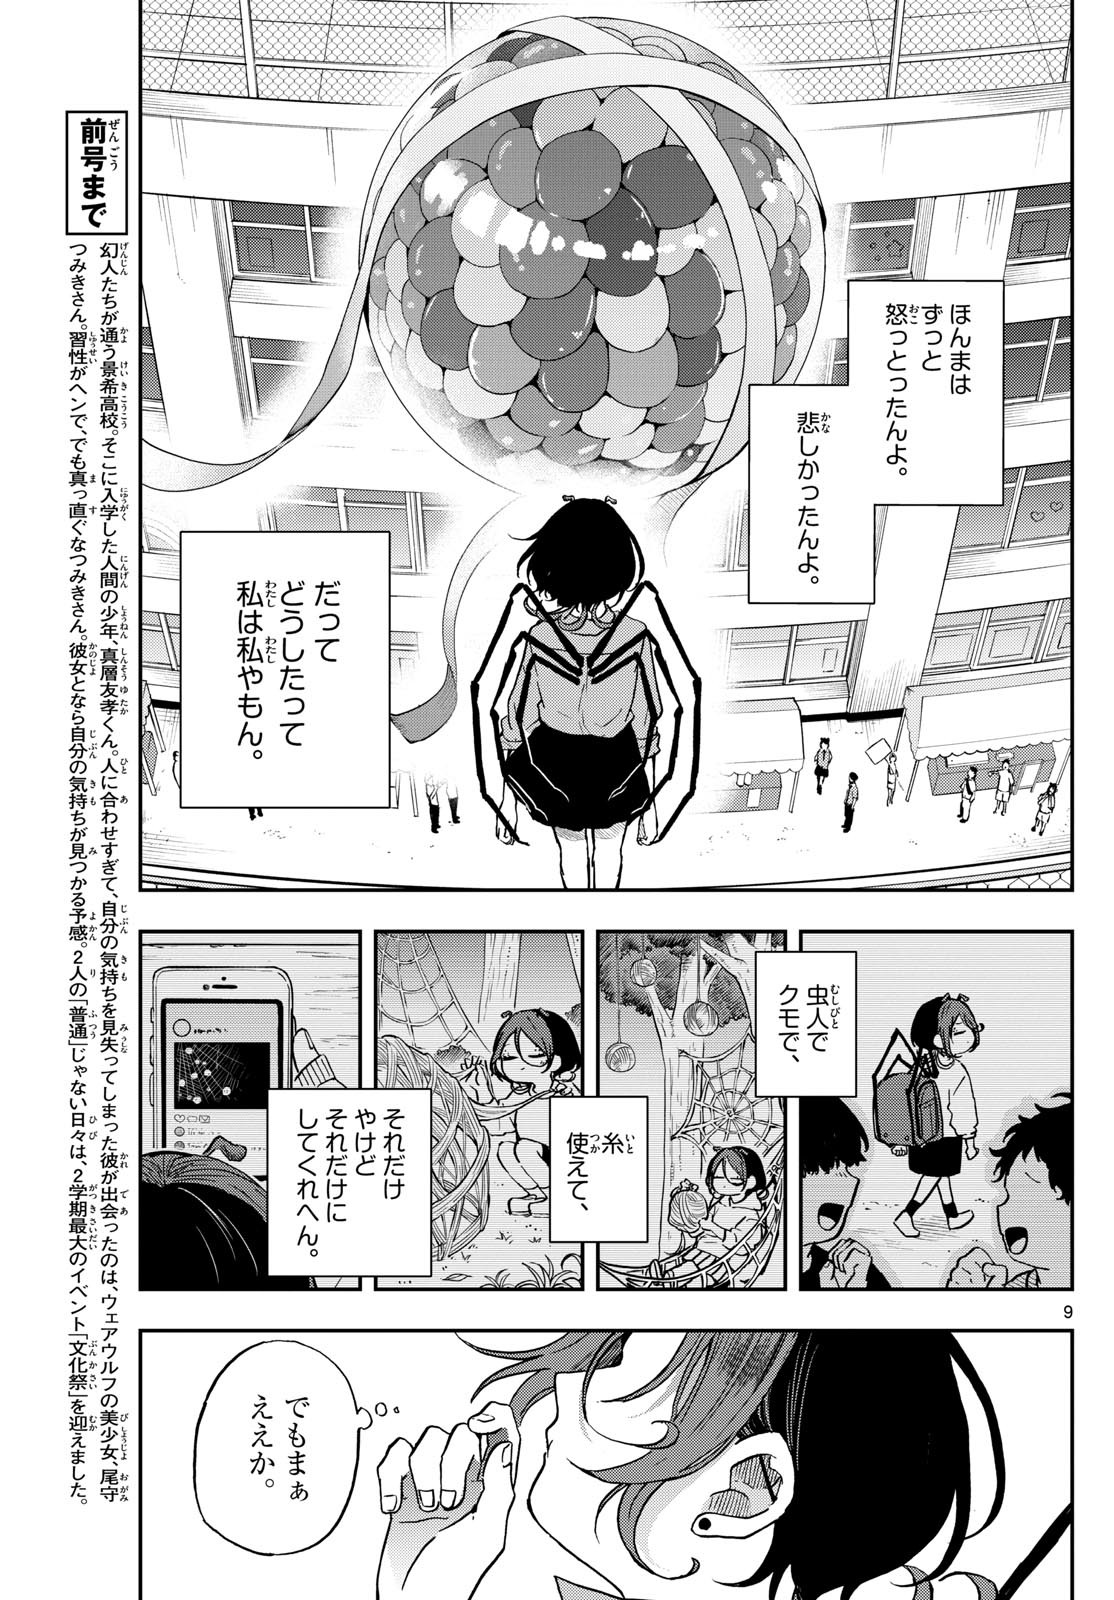 Omori Tsumiki to Kinichijou. - Chapter 32 - Page 9